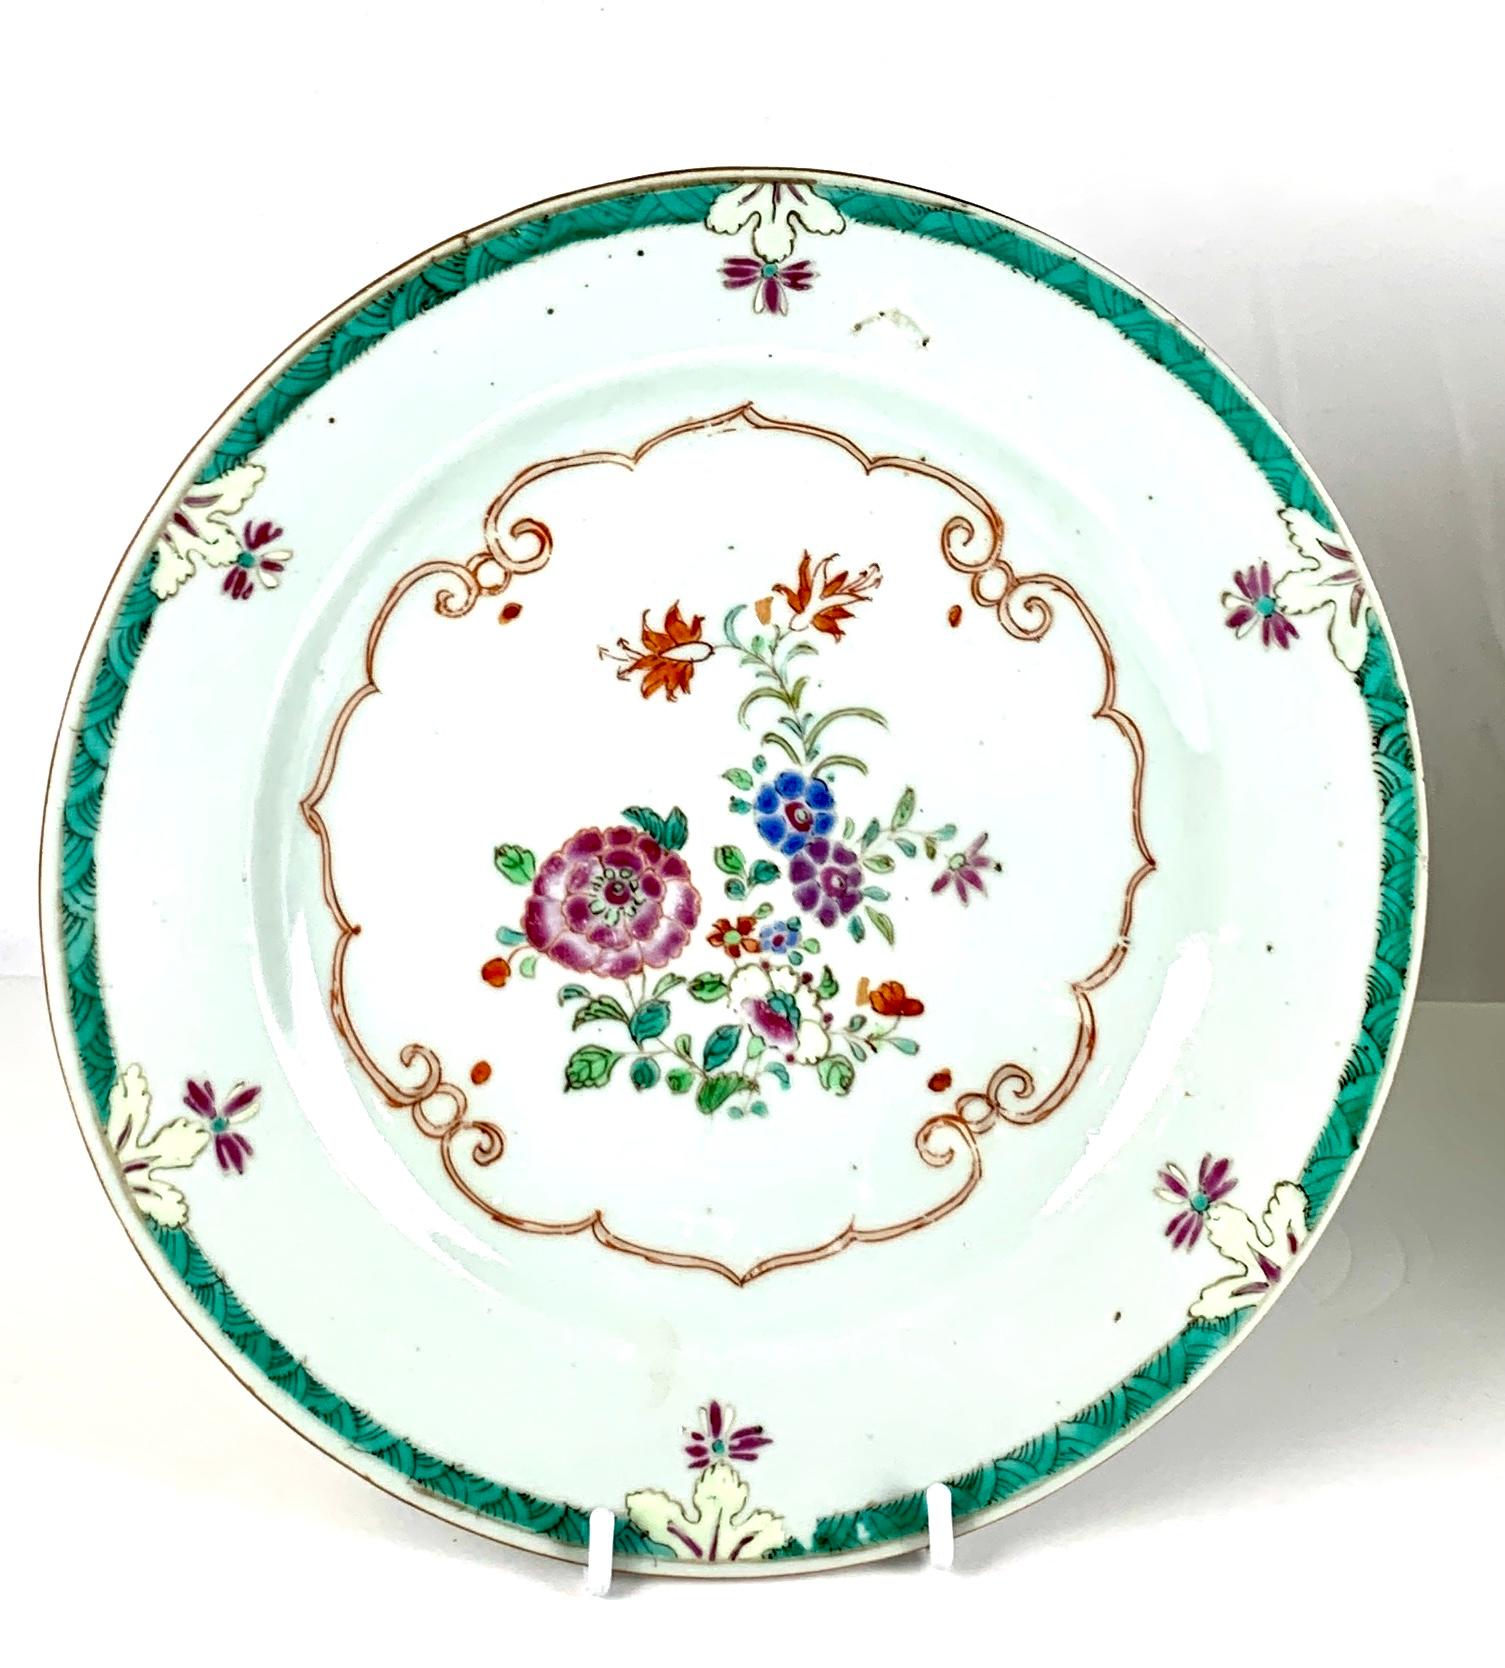 Dieses Paar schöner chinesischer Porzellanteller wurde Mitte des 18. Jahrhunderts im Famille-Rose-Stil handbemalt. 
Die Mitte jedes Tellers ist mit zarten farbigen Emaillen bemalt. 
Viele kleine grüne Blätter zieren hübsche Blüten in Lila, Rosa,